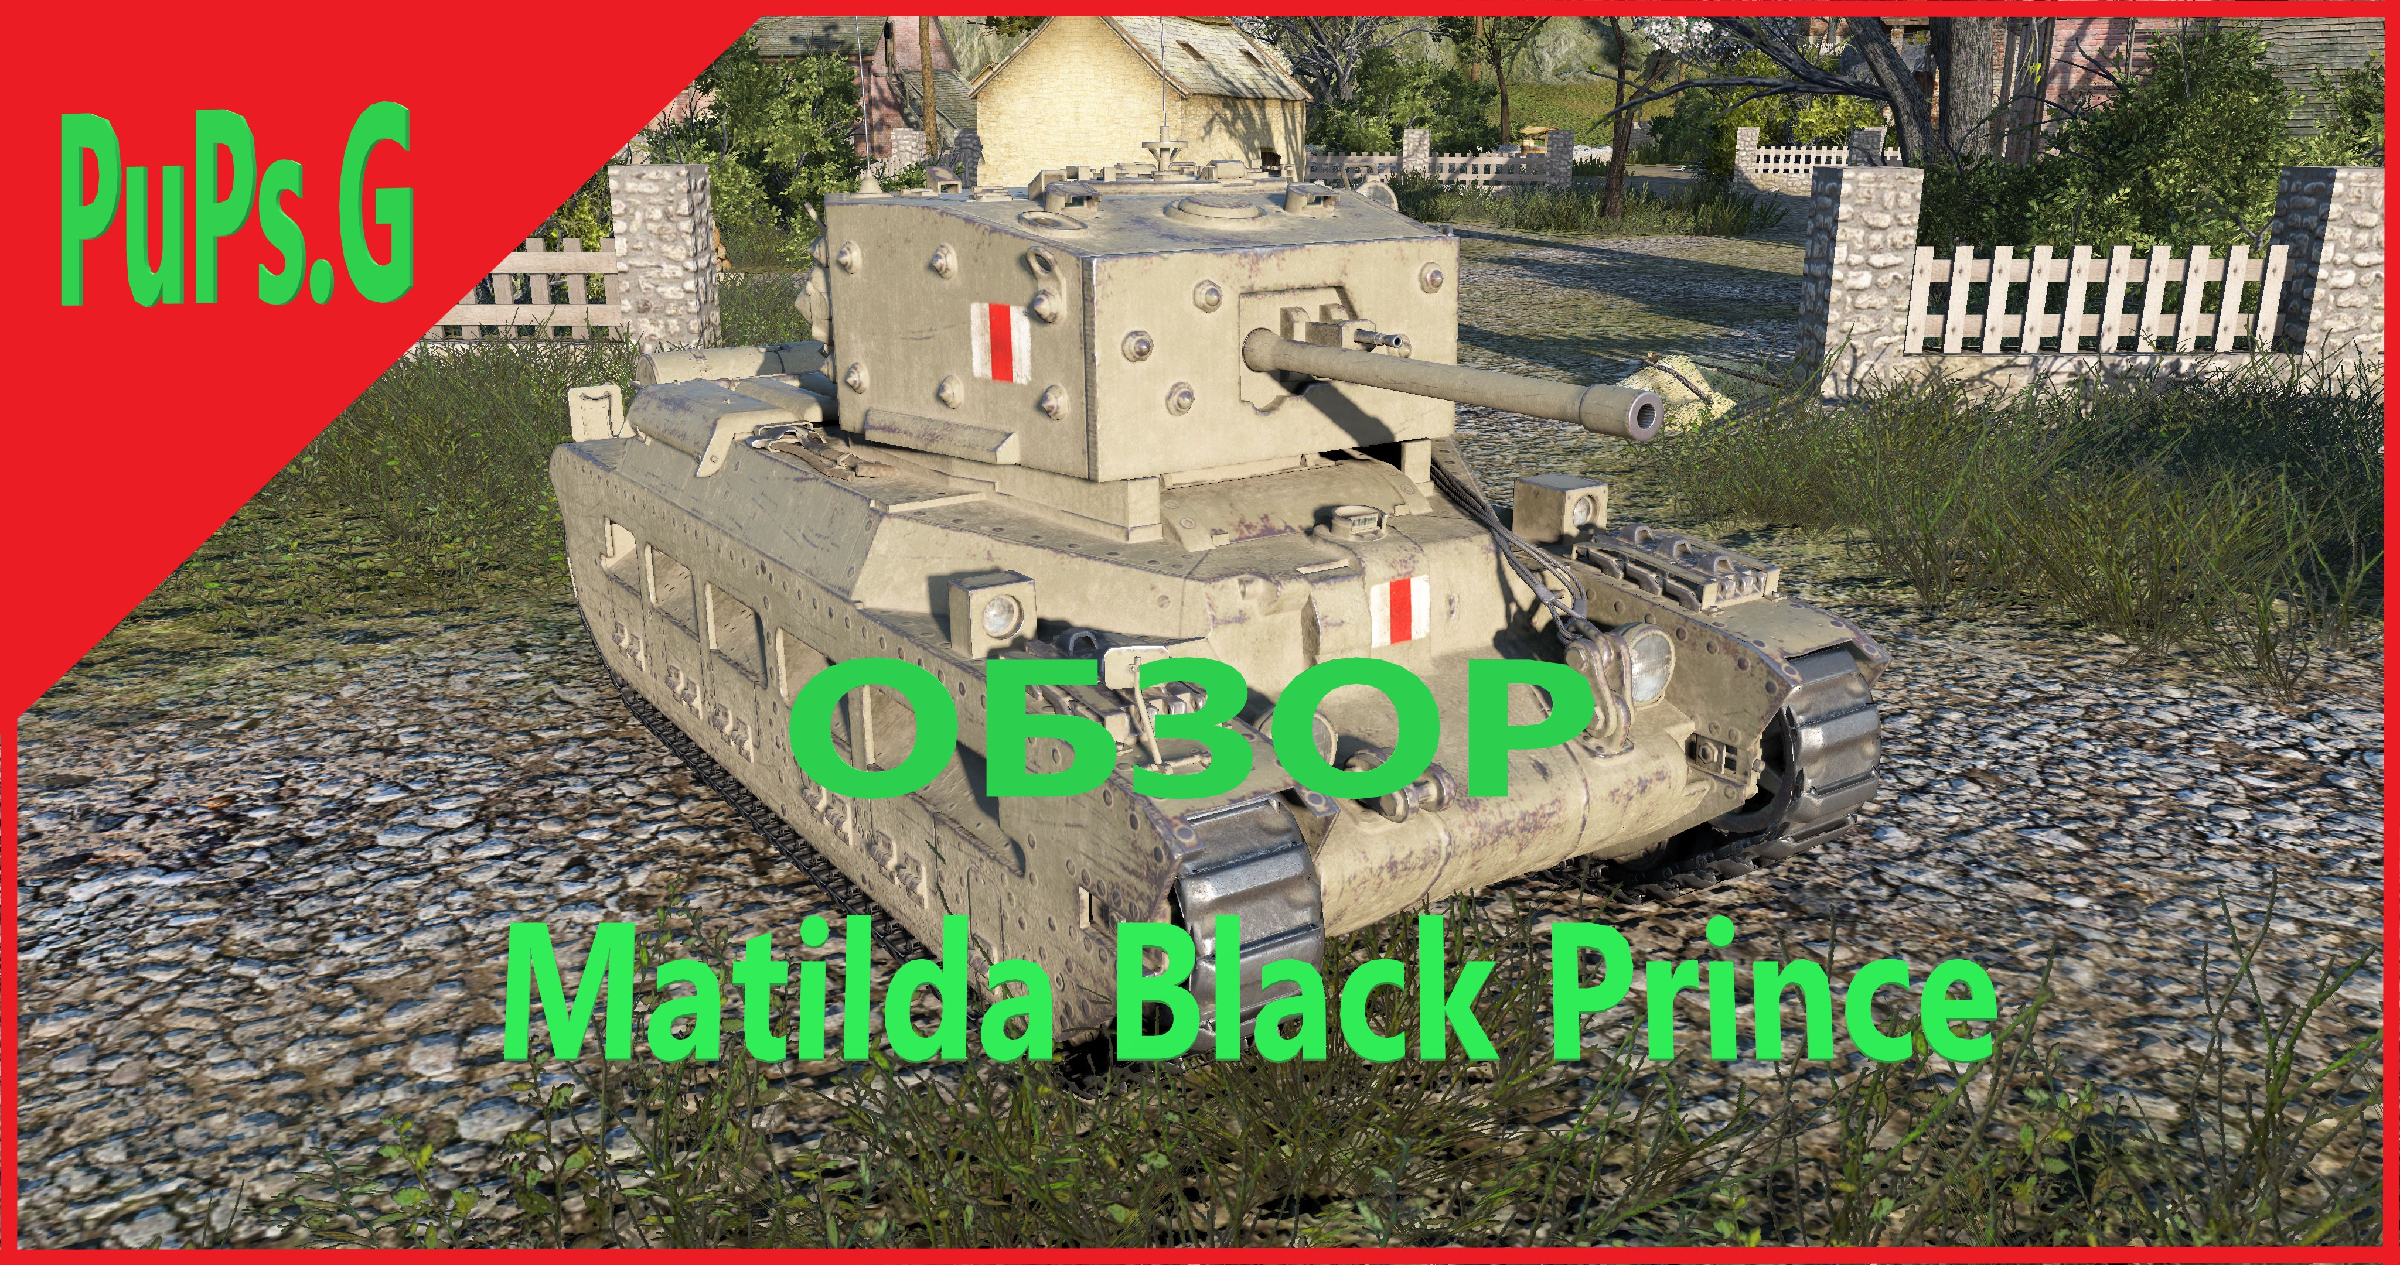 Matilda Black Prince